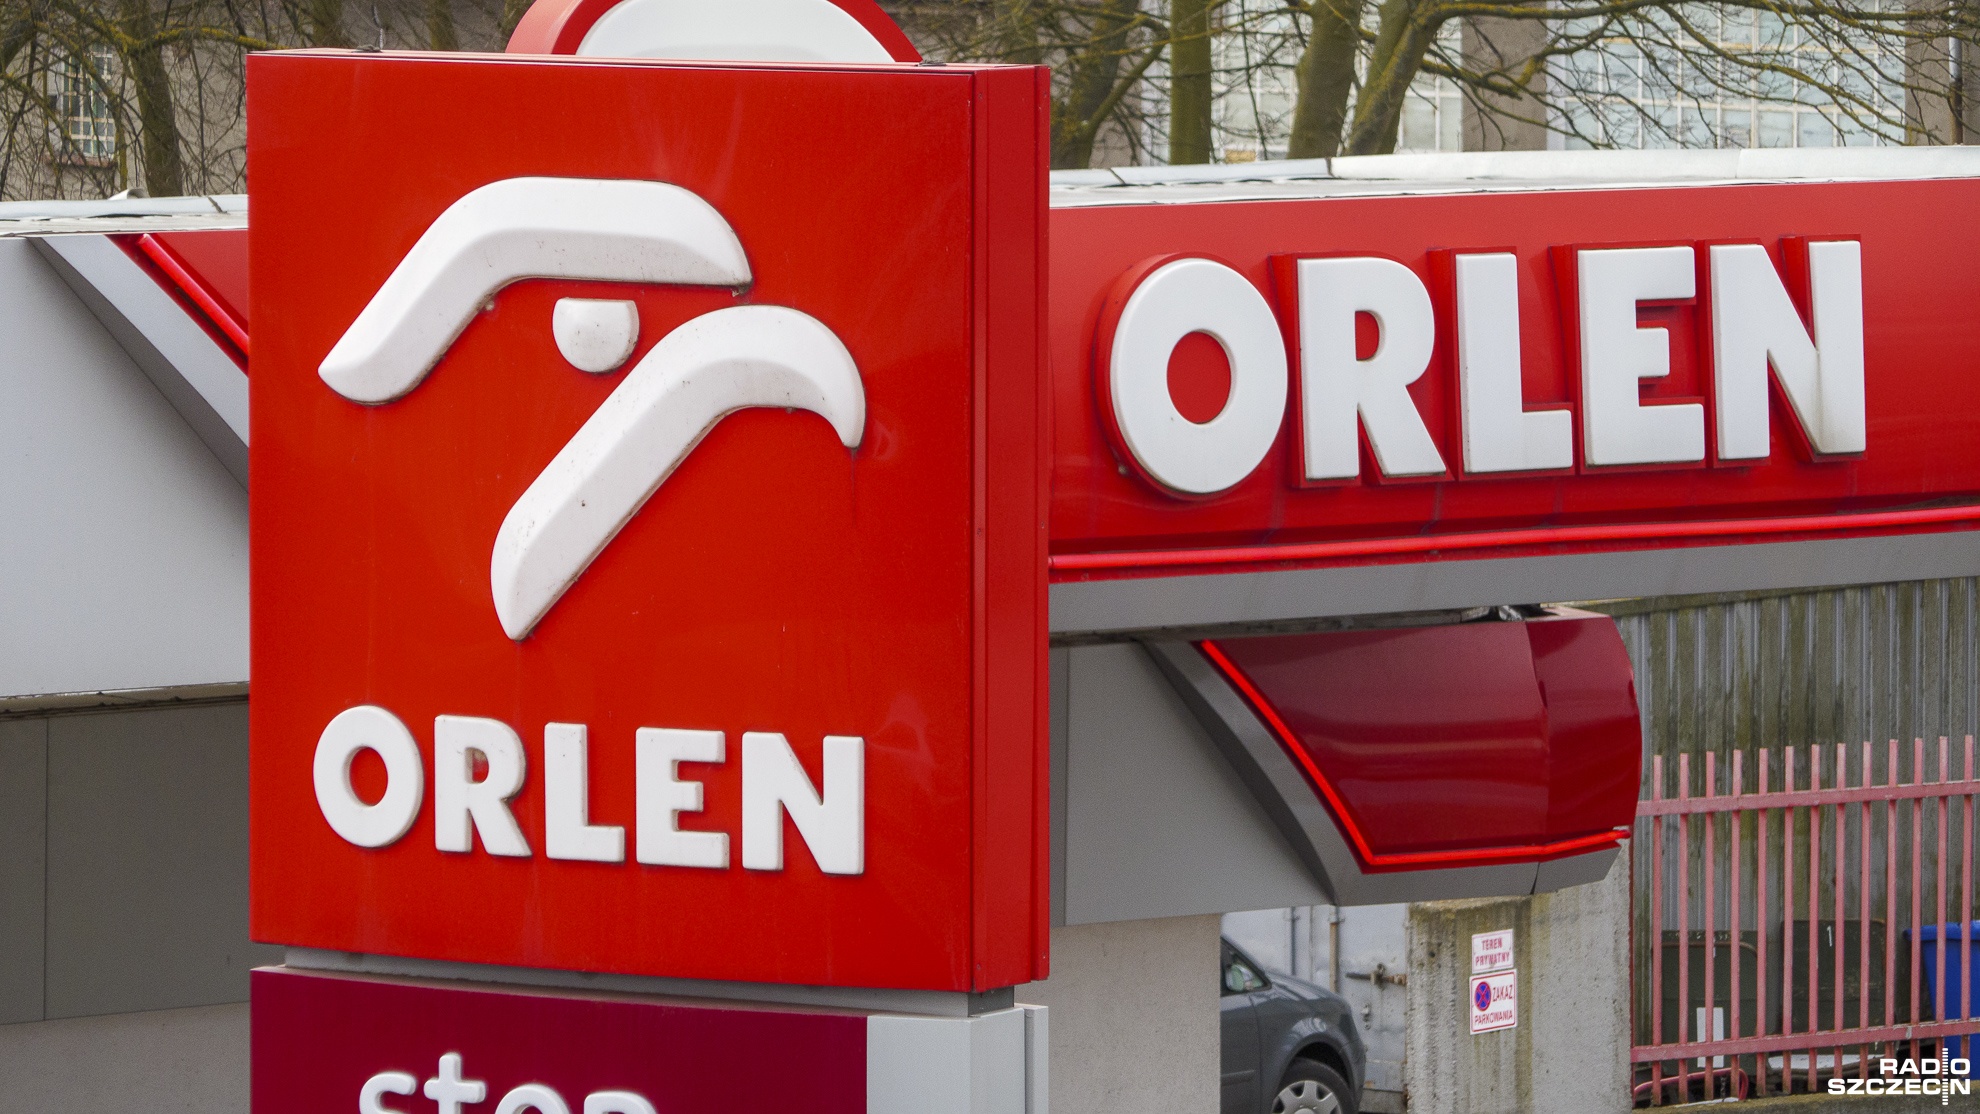 PKN Orlen i Grupa Lotos uzgodniły i podpisały plan połączenia, które nastąpi poprzez przeniesienie majątku Lotosu do Orlenu. W zamian za akcje Grupy Lotos akcjonariusze gdańskiej spółki otrzymają akcje powiększonego PKN Orlen.